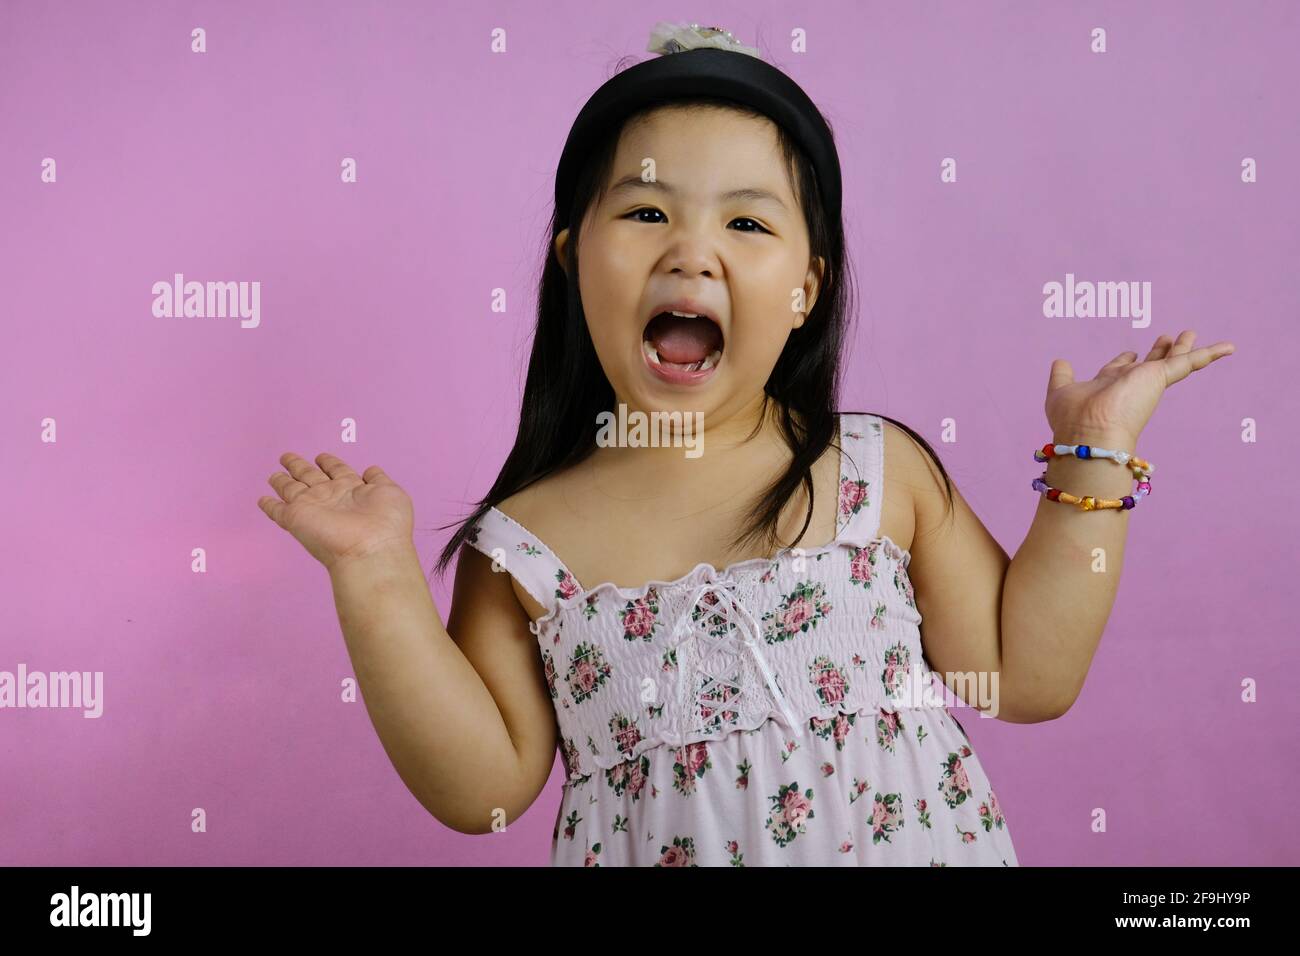 Ein süßes junges molliges asiatisches Mädchen, das sich aufgeregt und schreiend fühlt, mit weit geöffnetem Mund und erhobenen Händen und rosa Hintergrund. Stockfoto